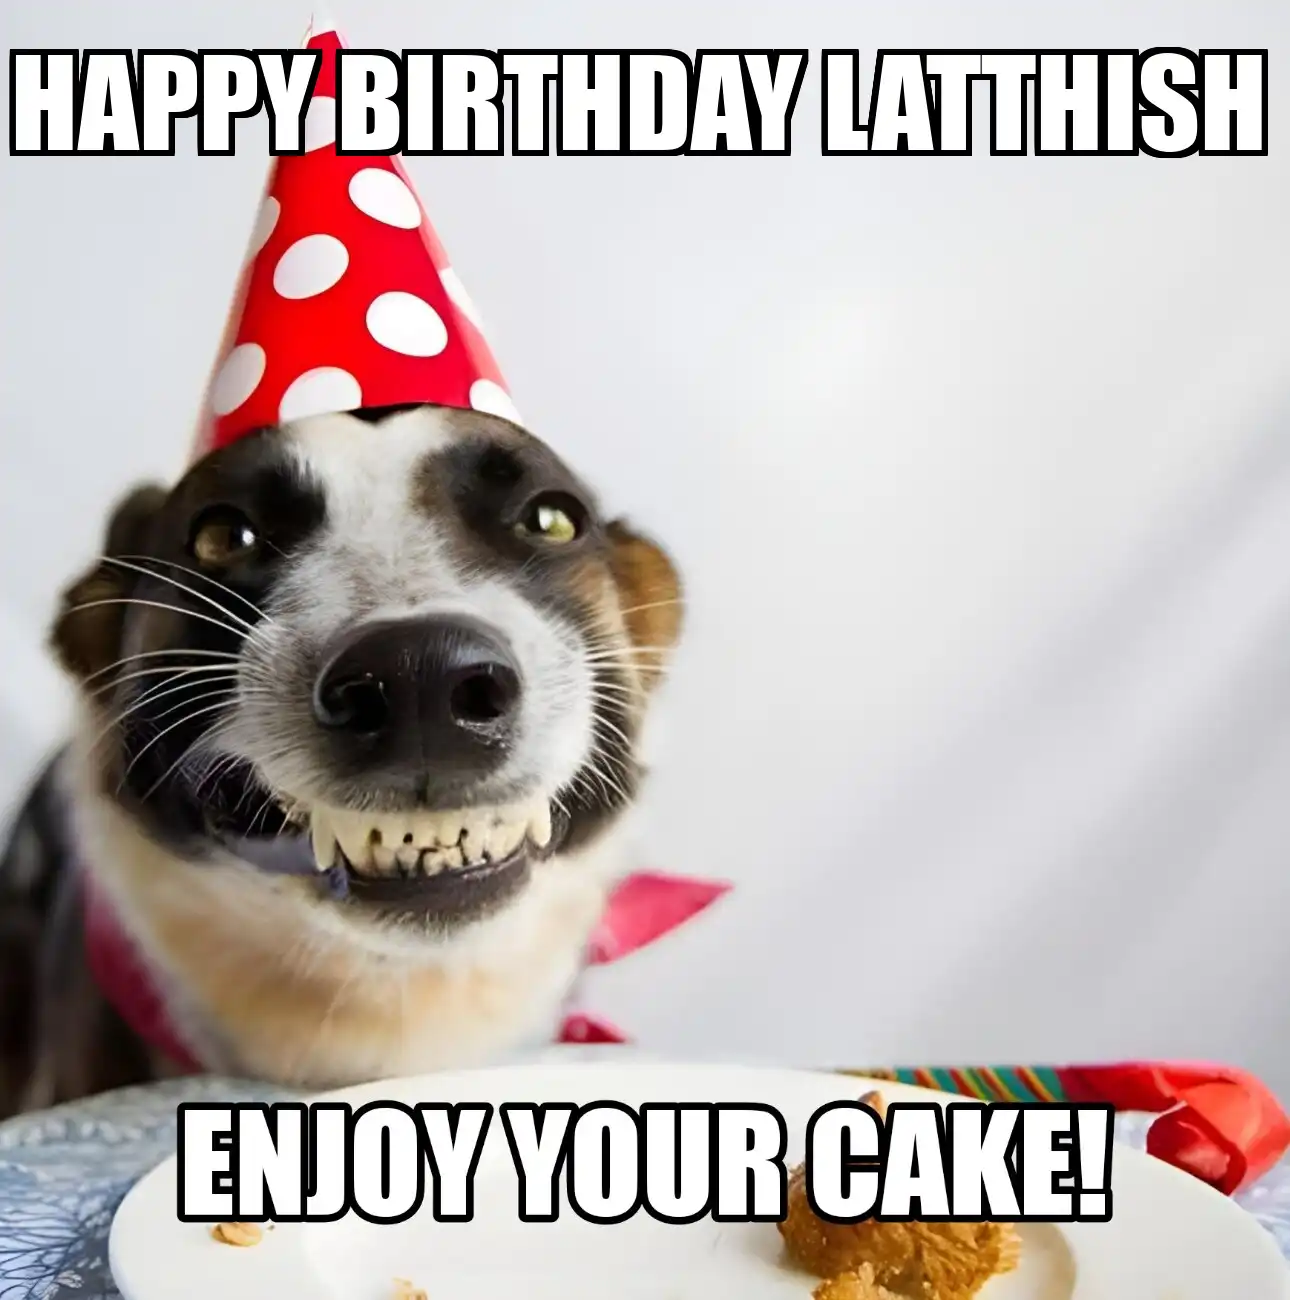 Happy Birthday Latthish Enjoy Your Cake Dog Meme